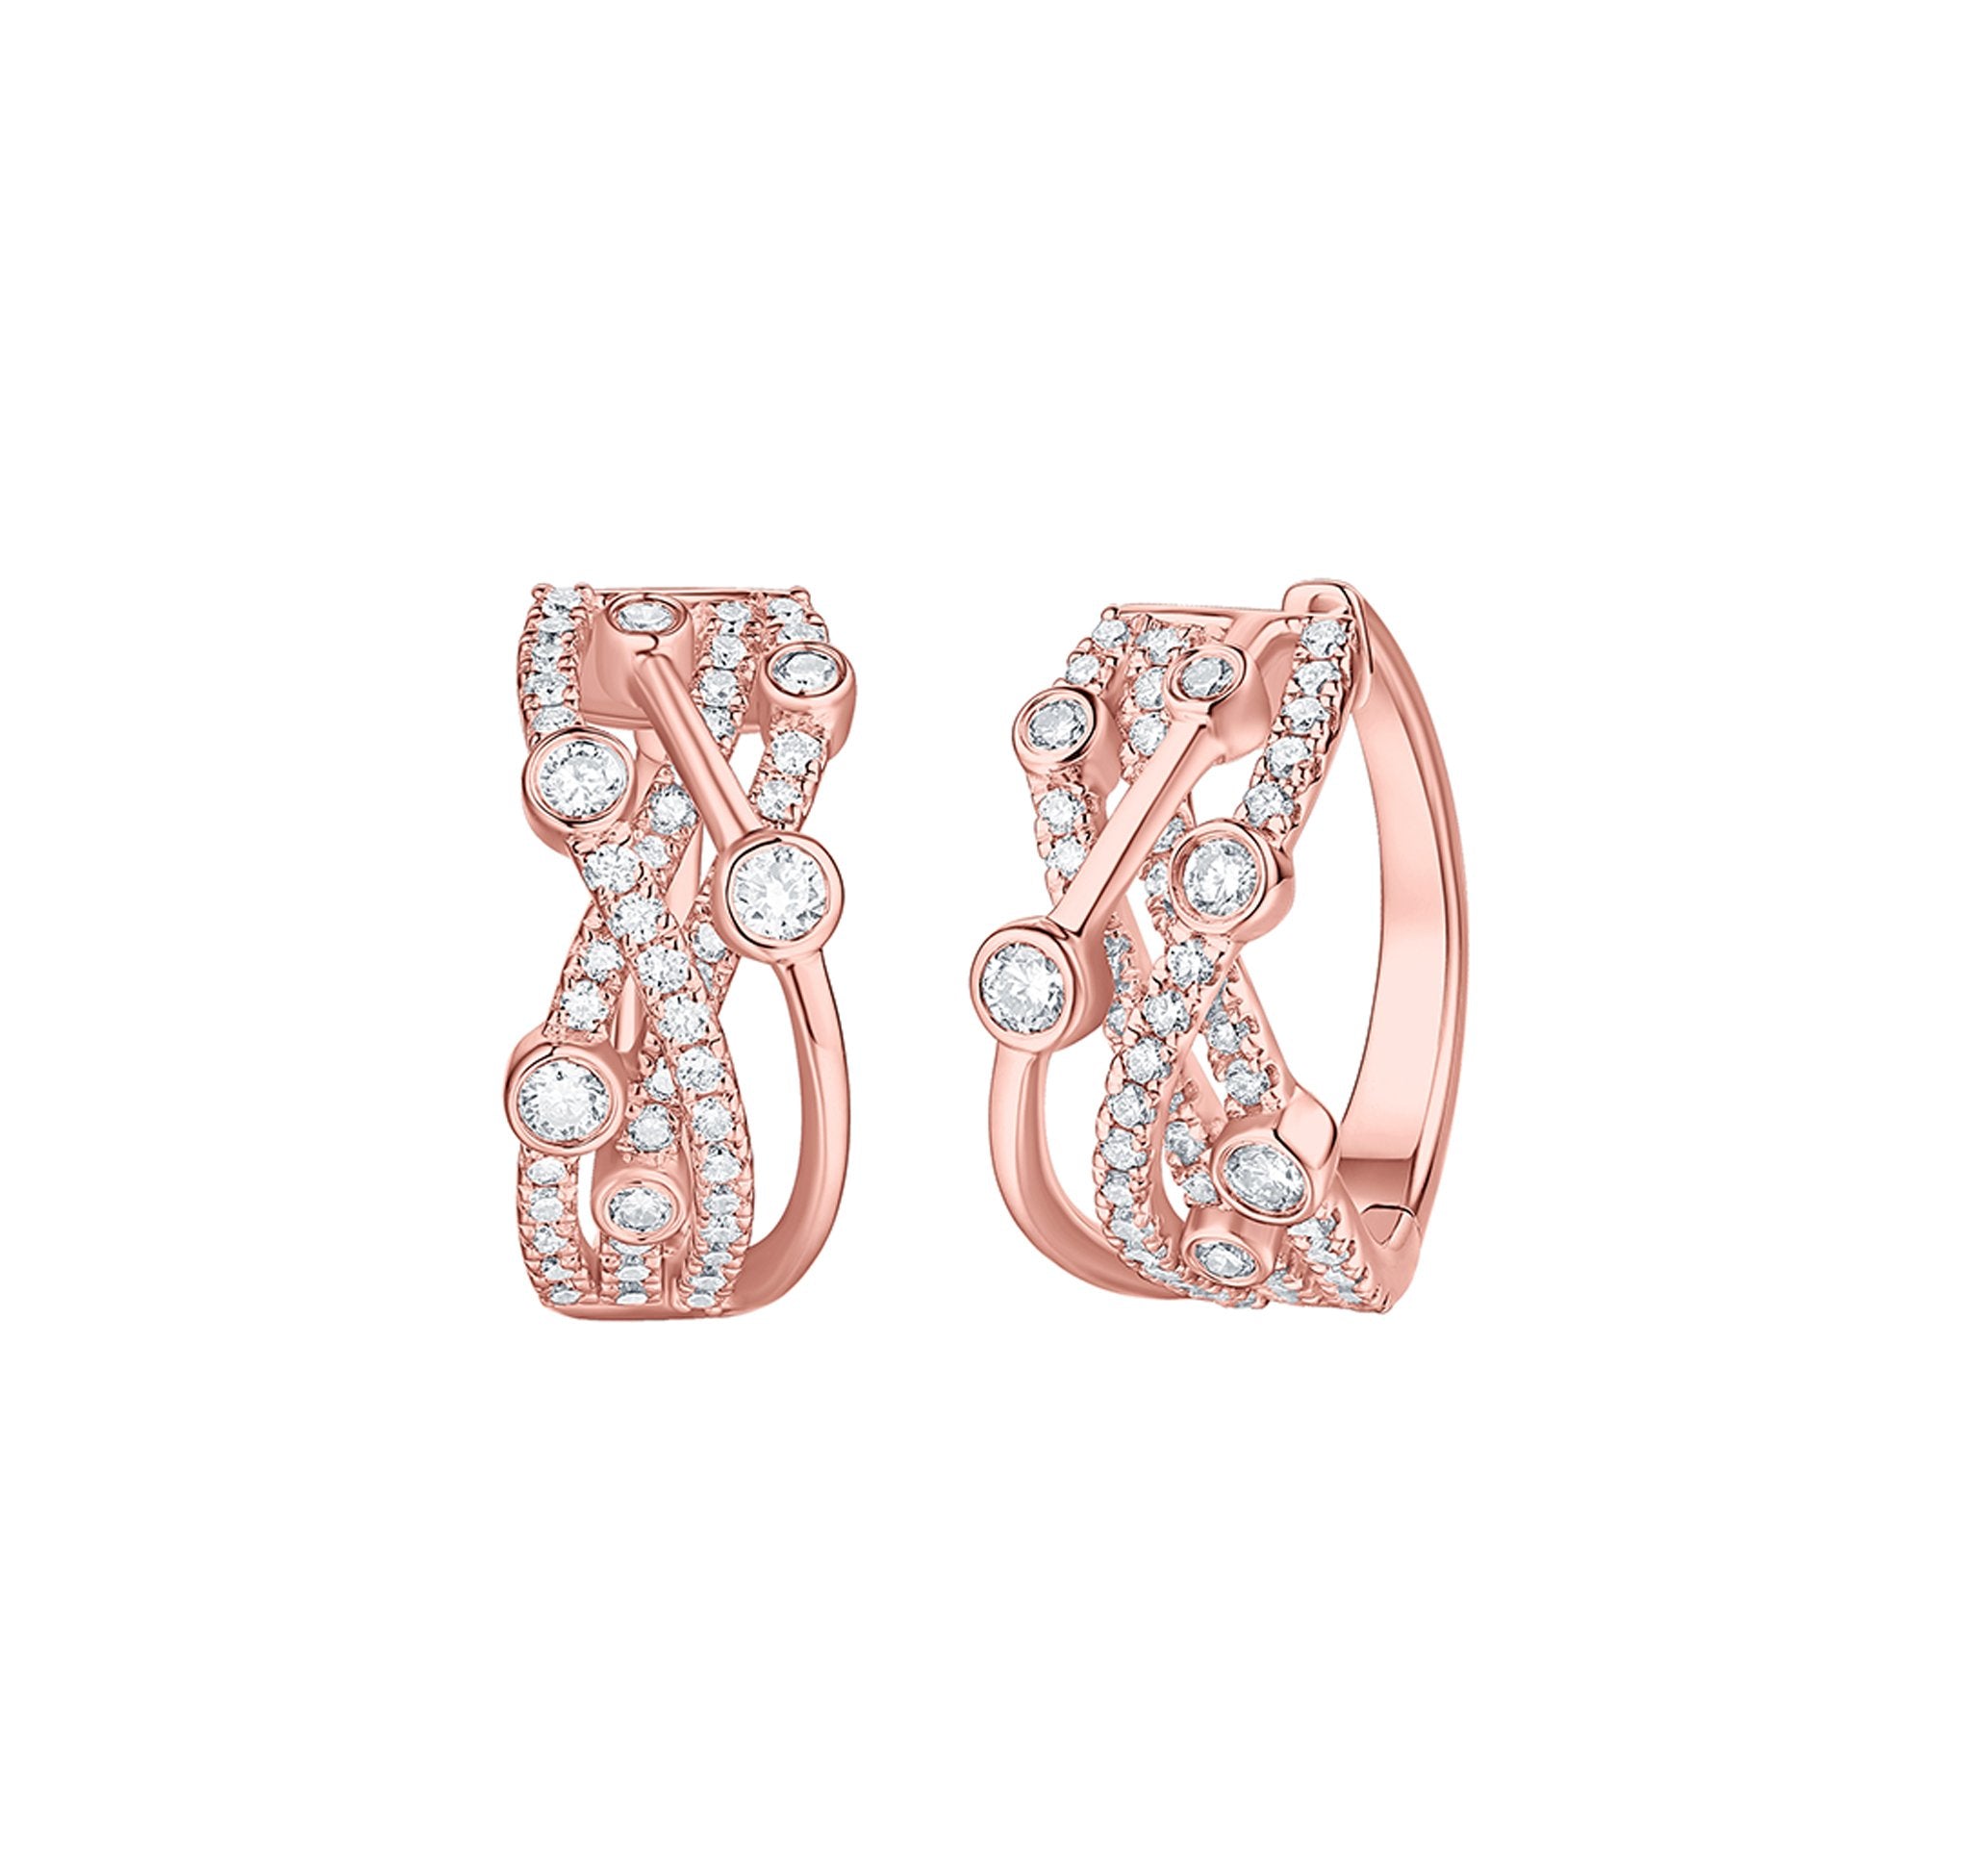 Smiling Rocks Lab grown diamond Bubbly Criss Cross Hoop Earrings in 10K 1.02ctw Rose Gold